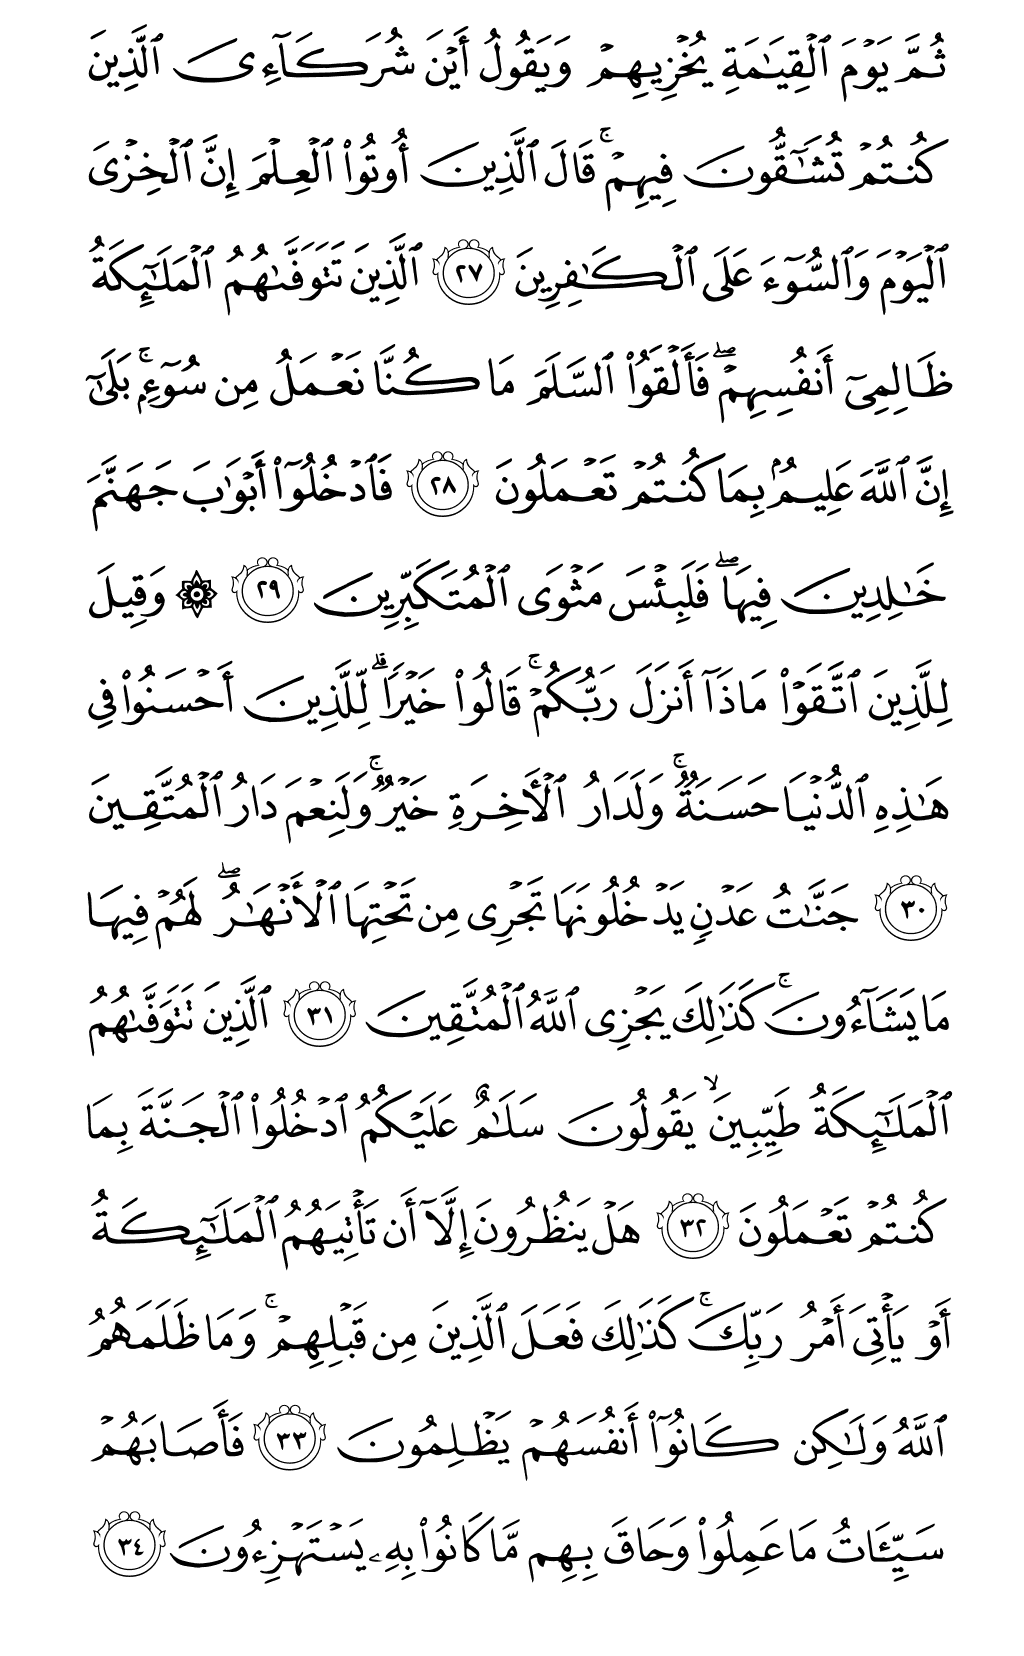 الصفحة رقم 270 من القرآن الكريم